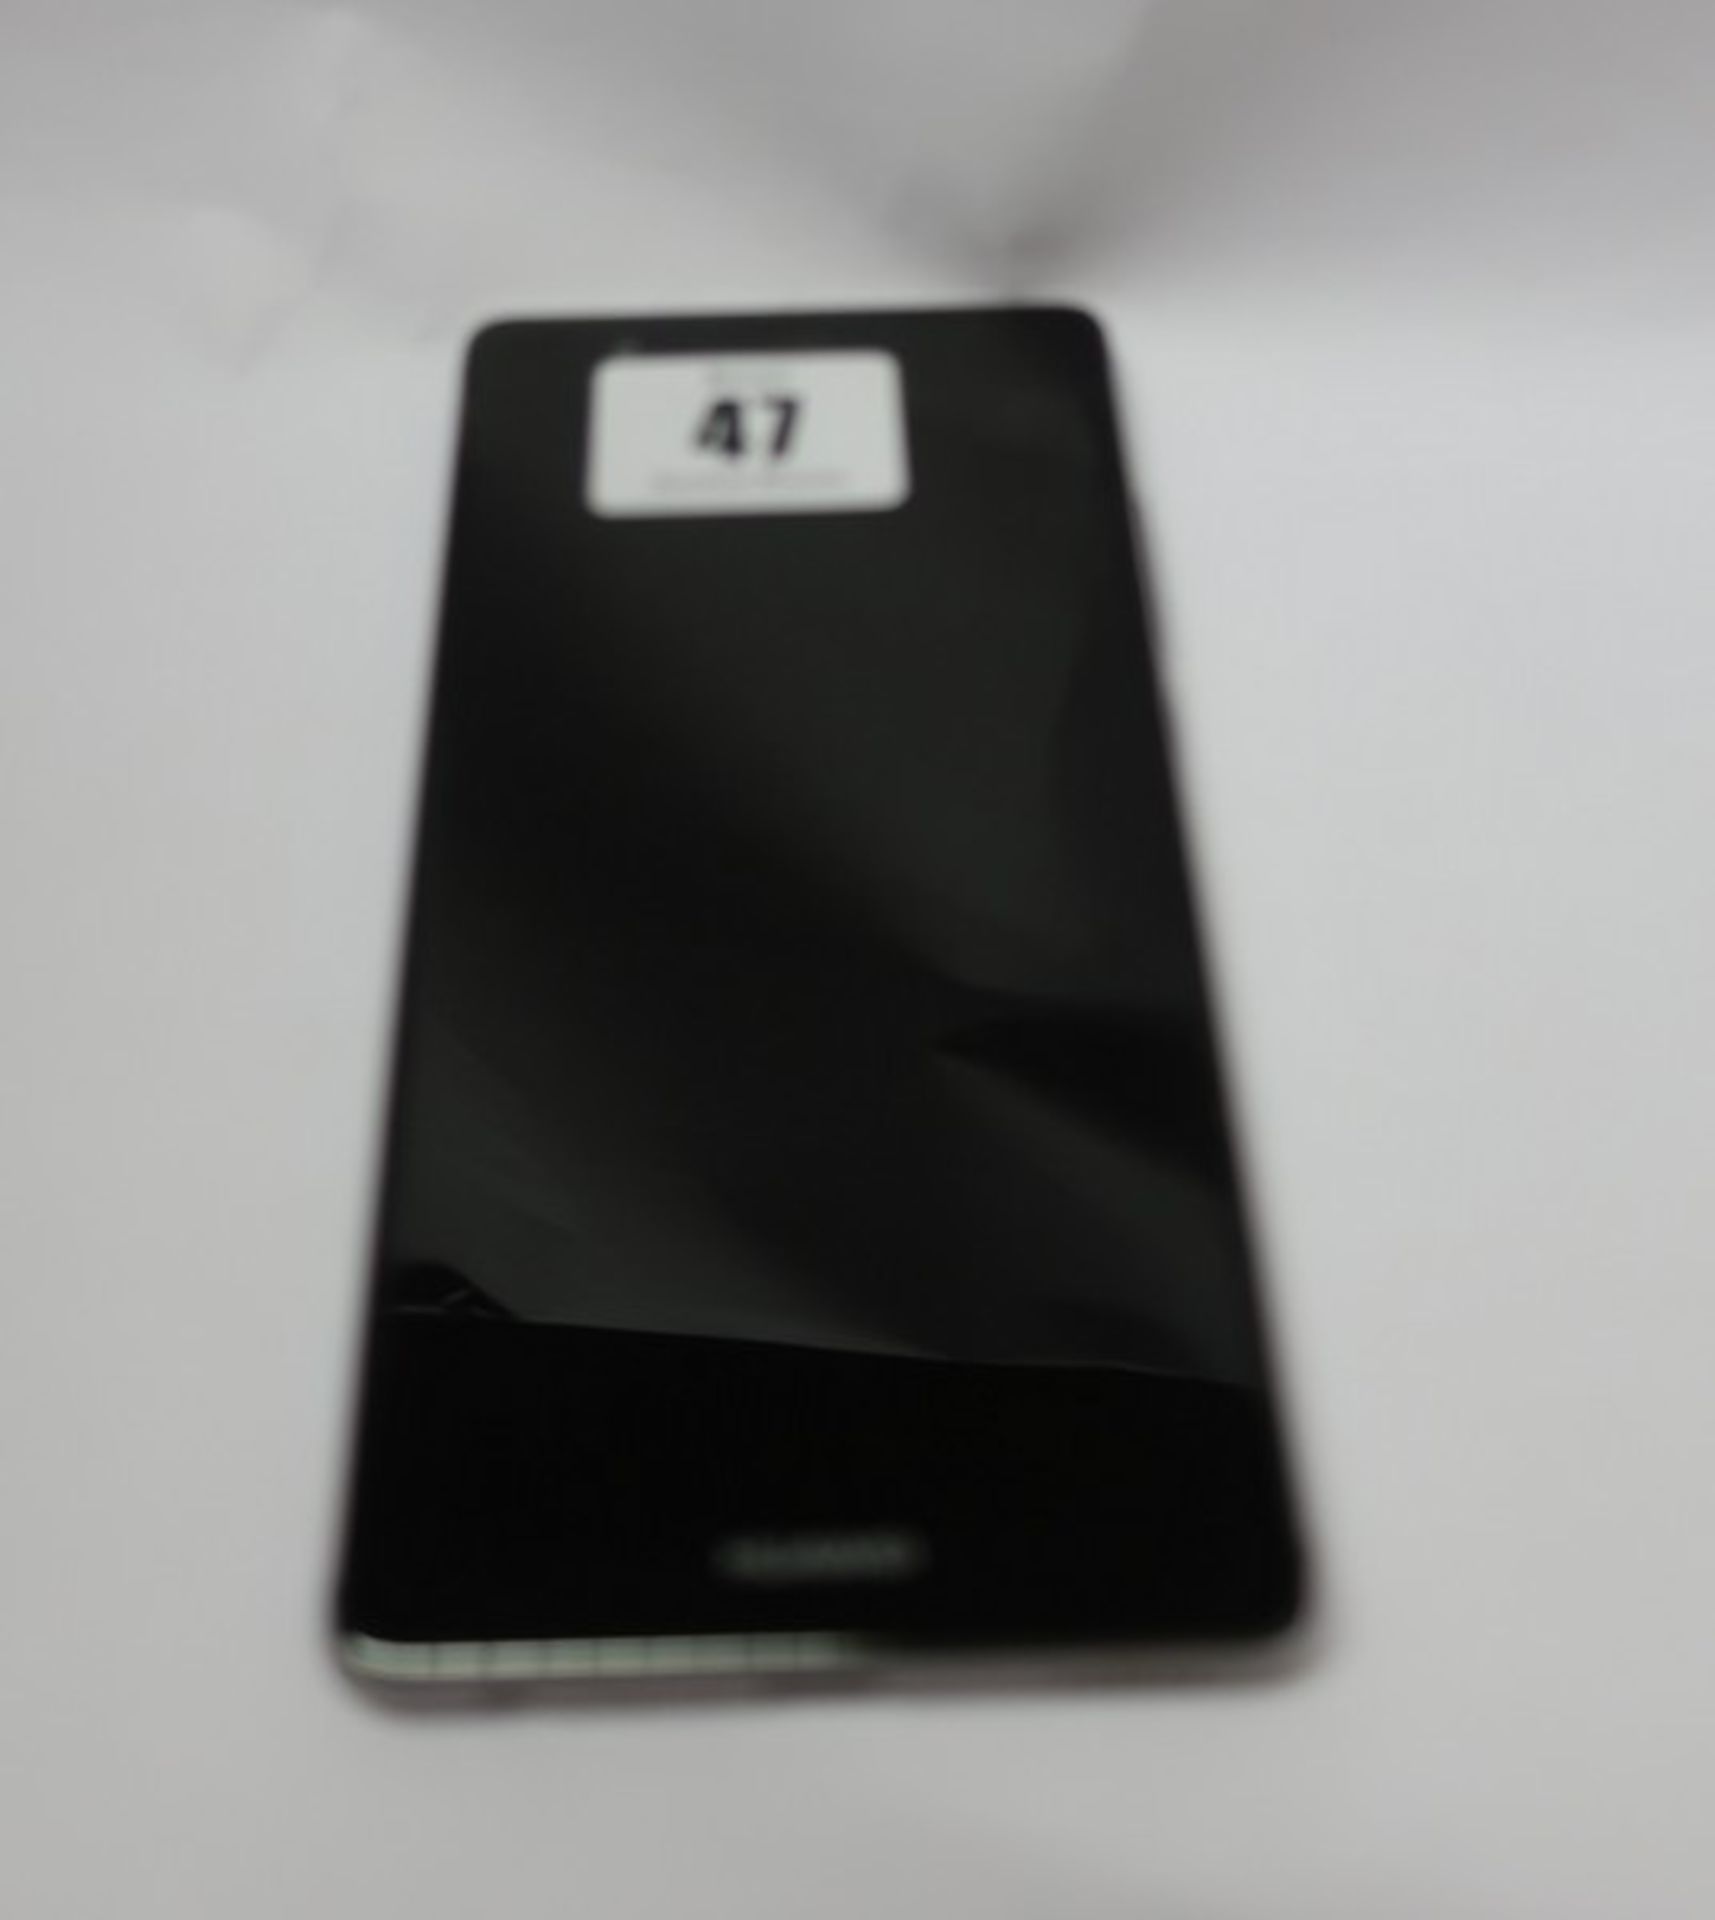 A Huawei P9 EVA-L09 32GB in Titanium Grey (IMEI: 862836034680862) (FRP clear).